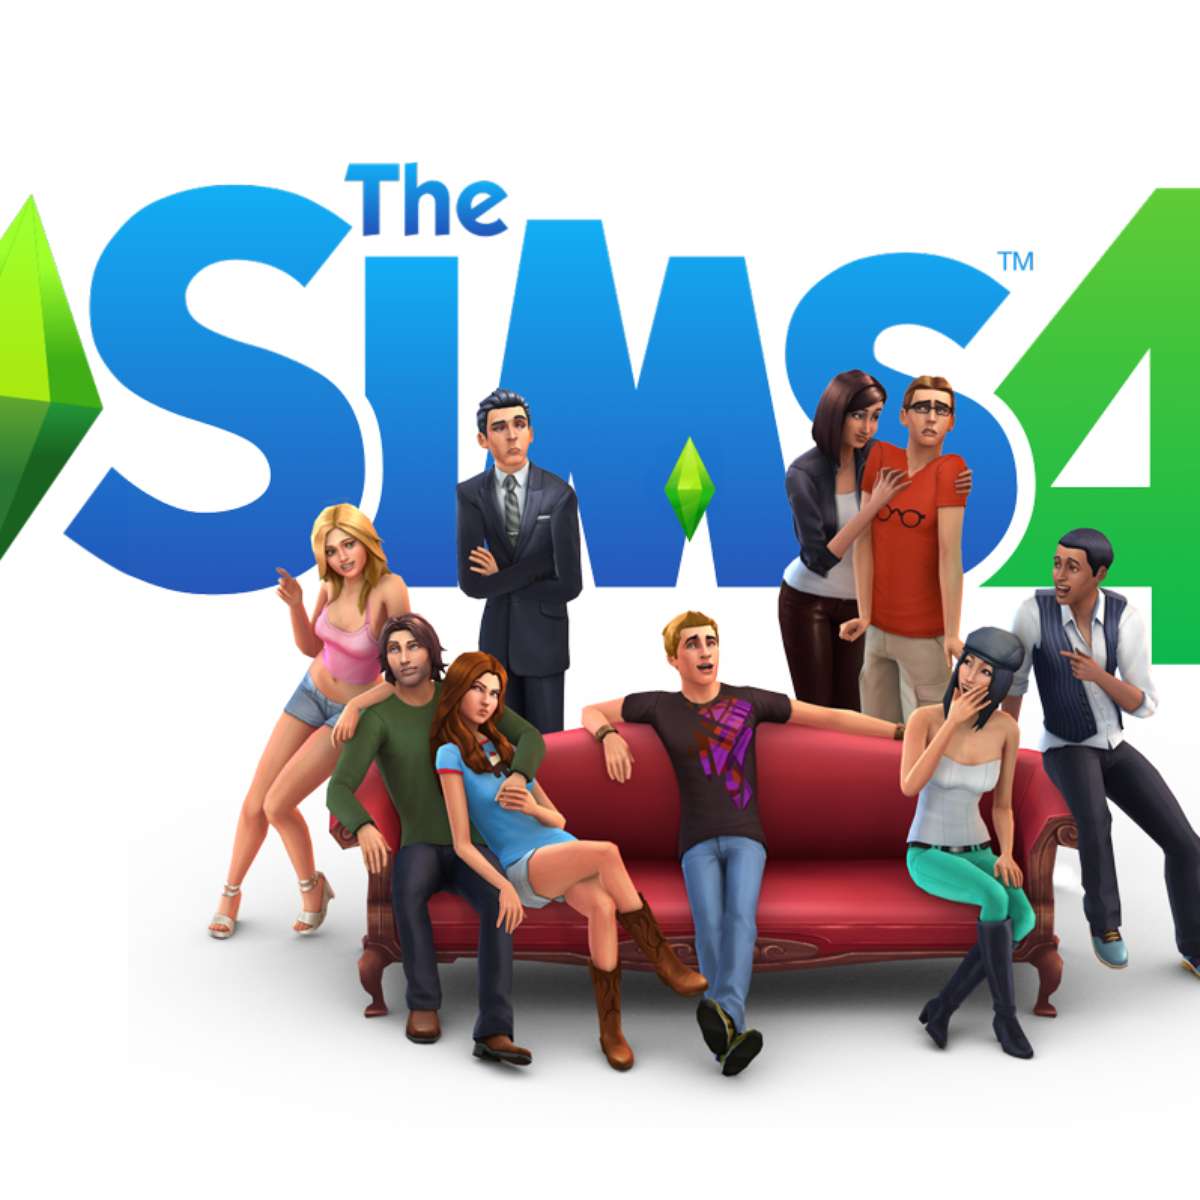 Como fazer os cheats voltar a funcionar The Sims 4 -SKilo 